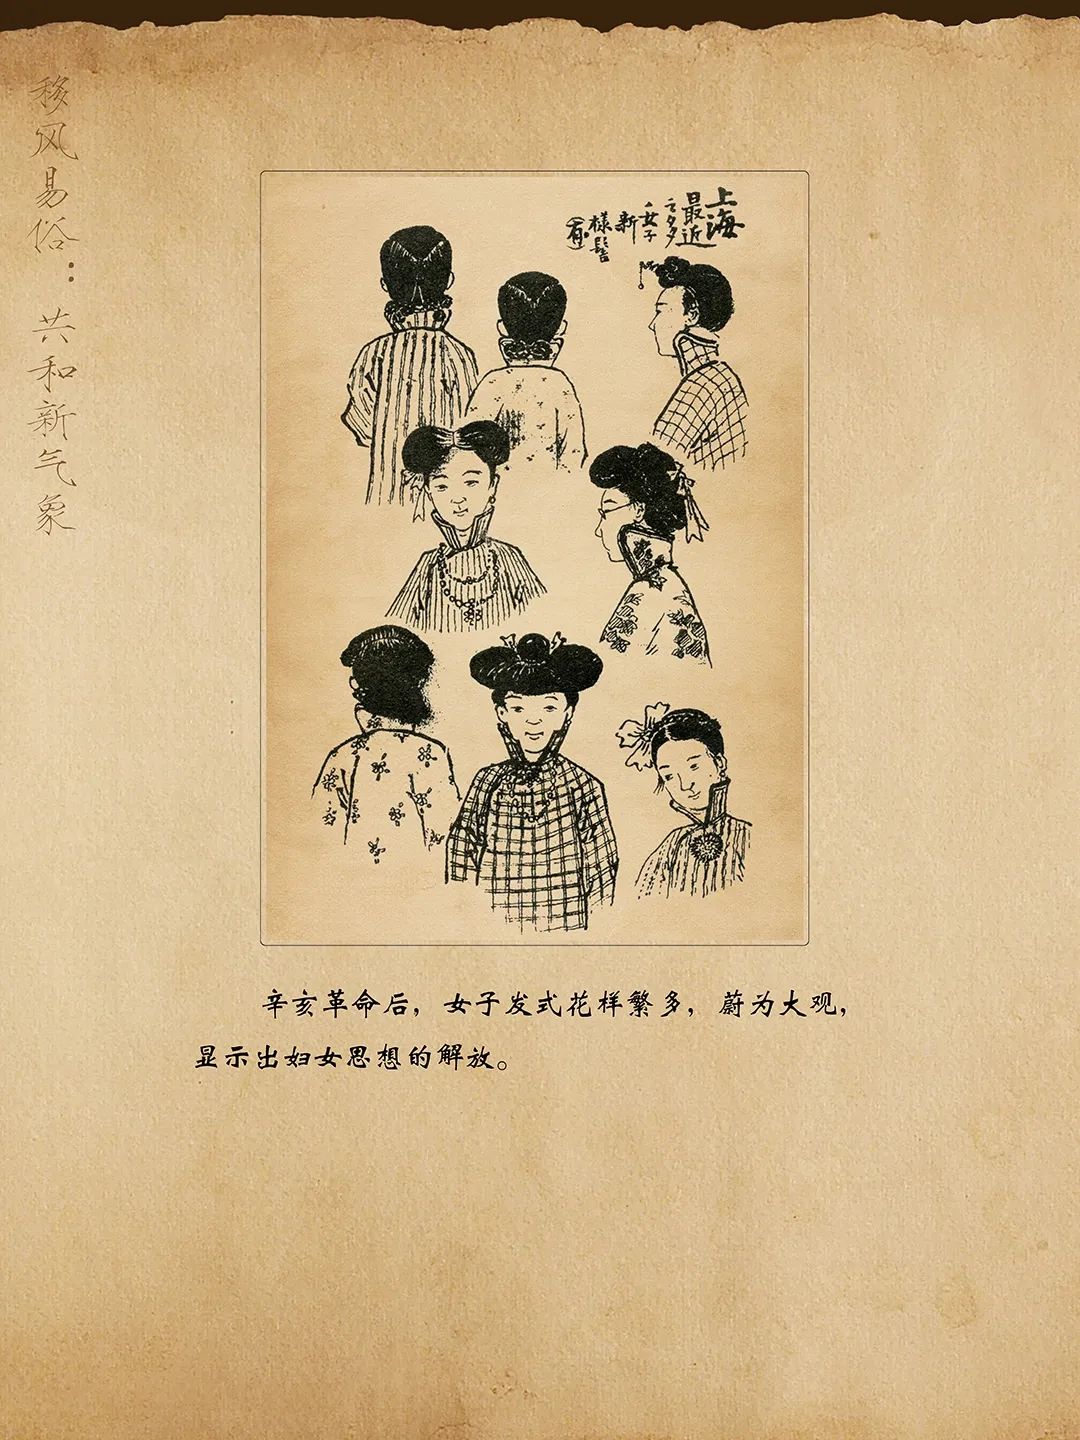 线上展览:历史的放大镜——辛亥革命时期漫画展(十四)